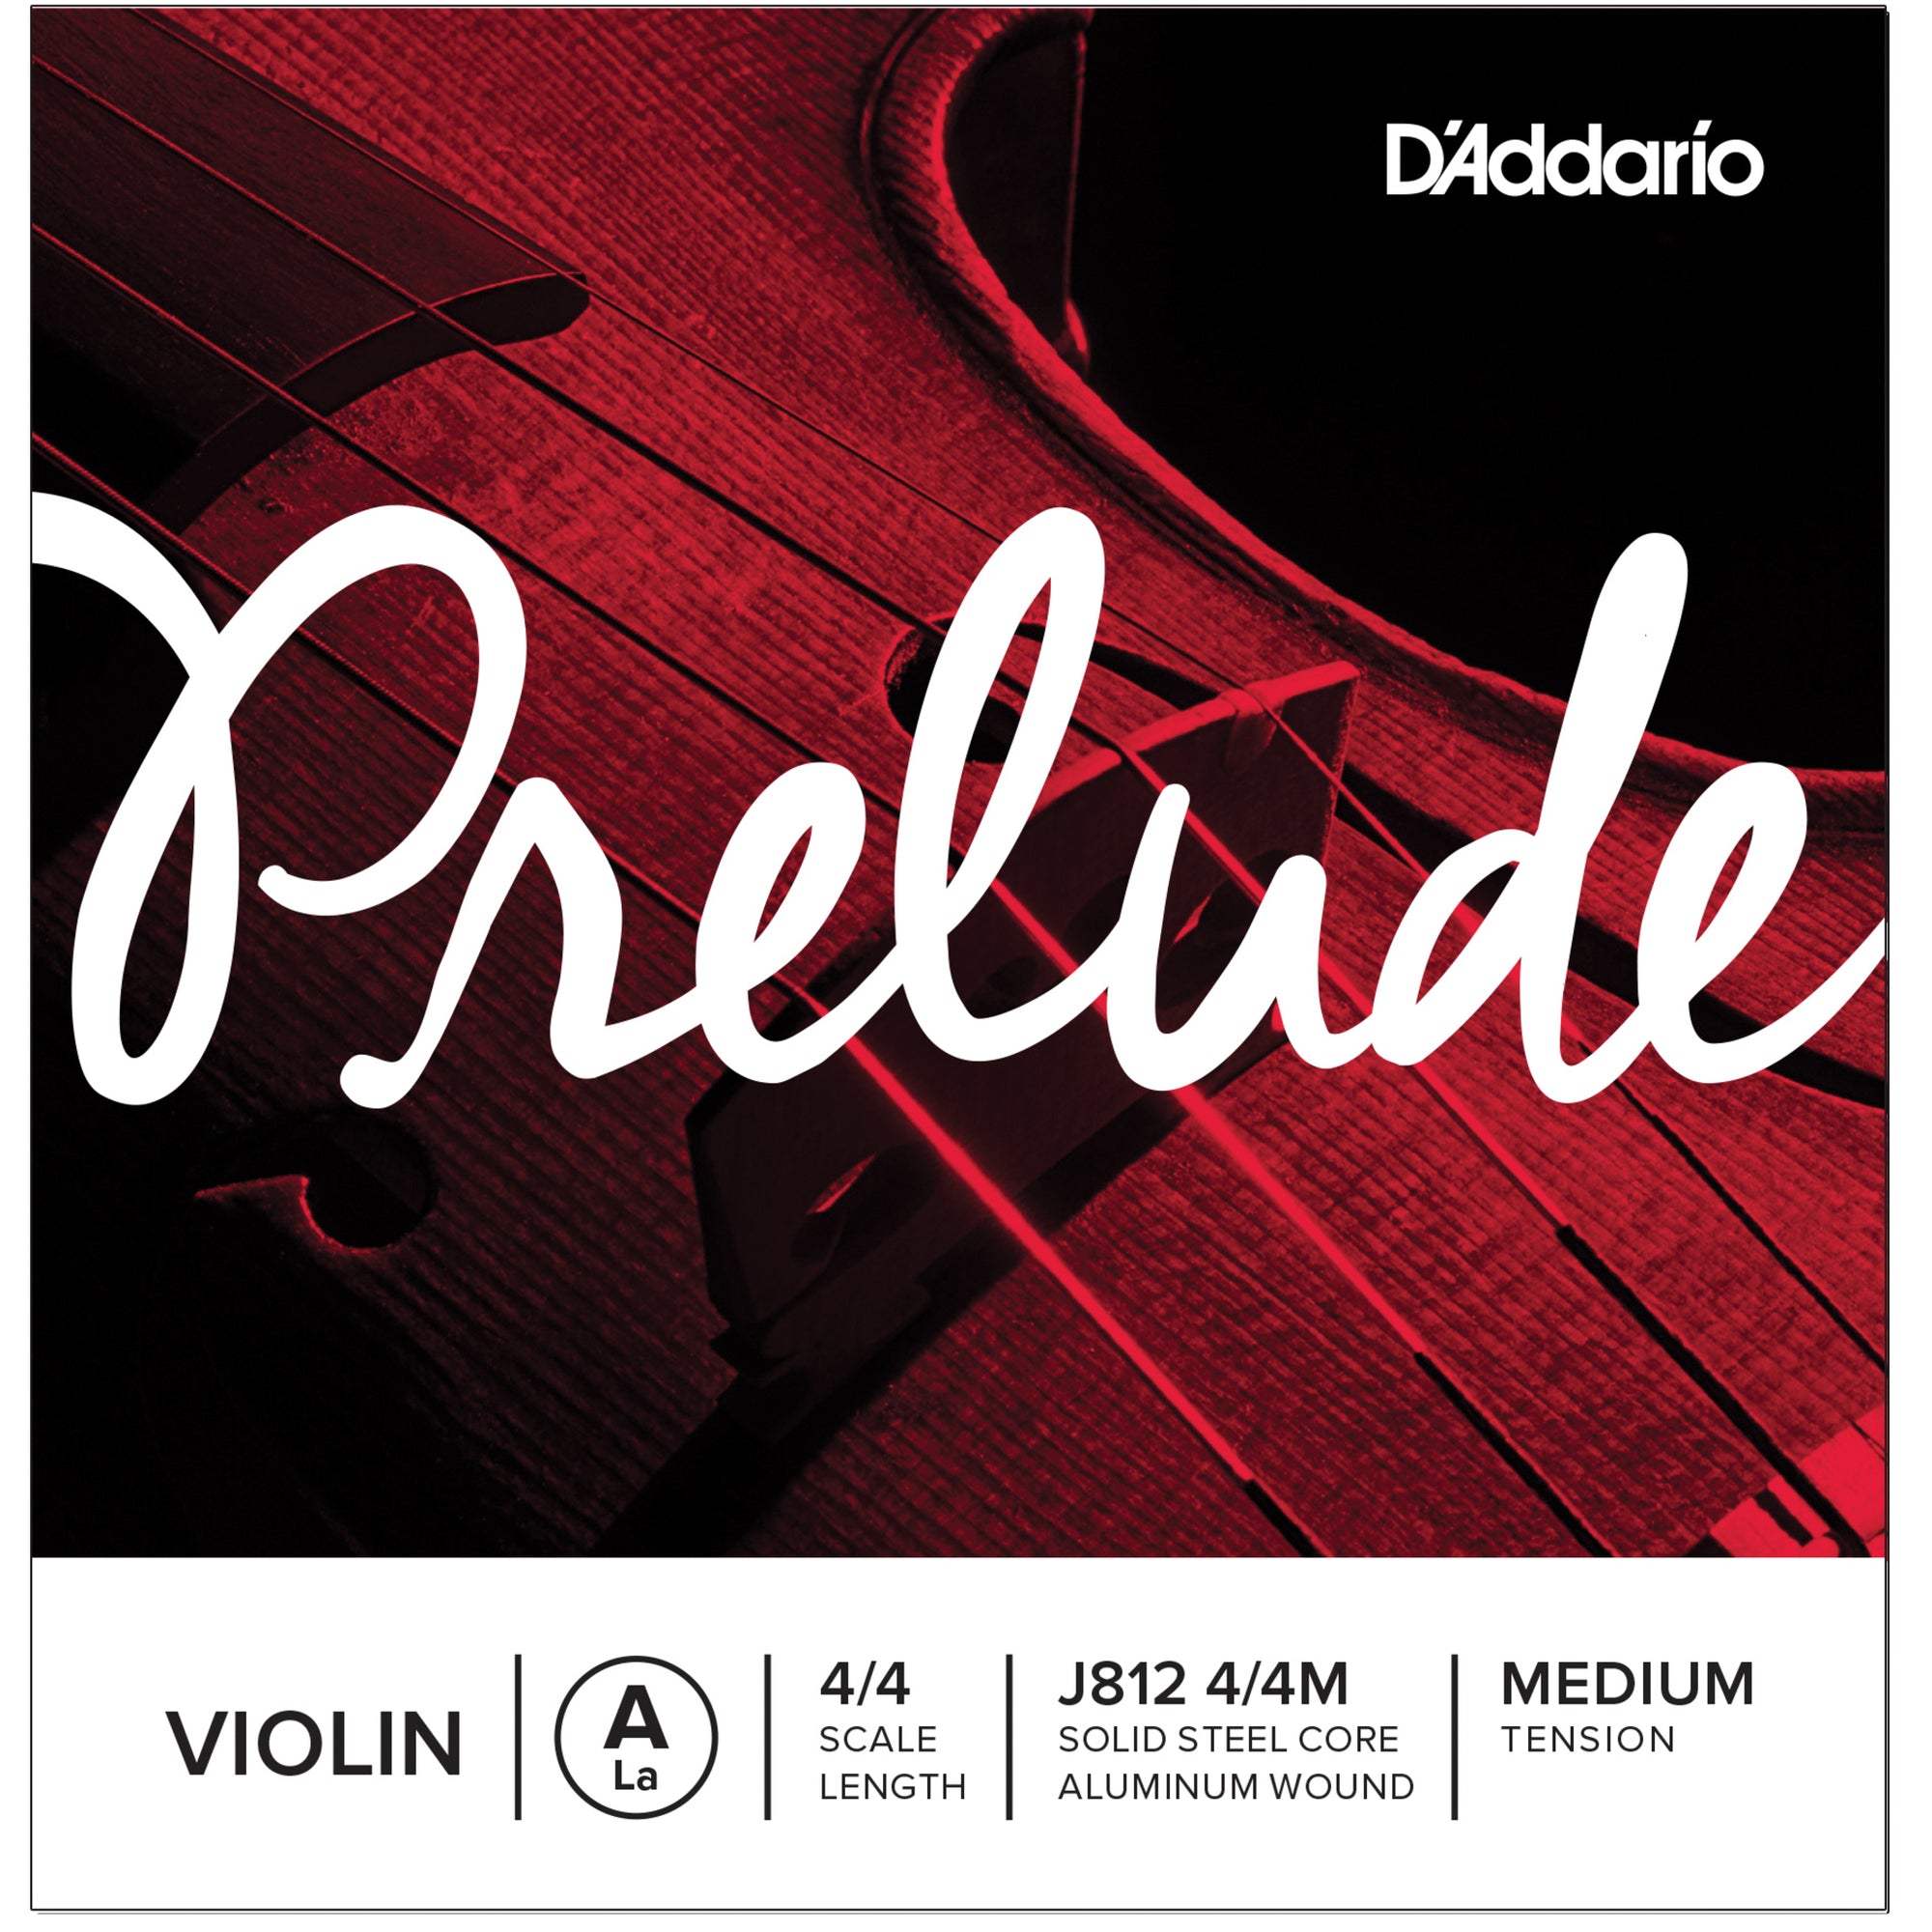 D'Addario J812 4/4M  Prelude 4/4 Full A Violin Single String Medium J812